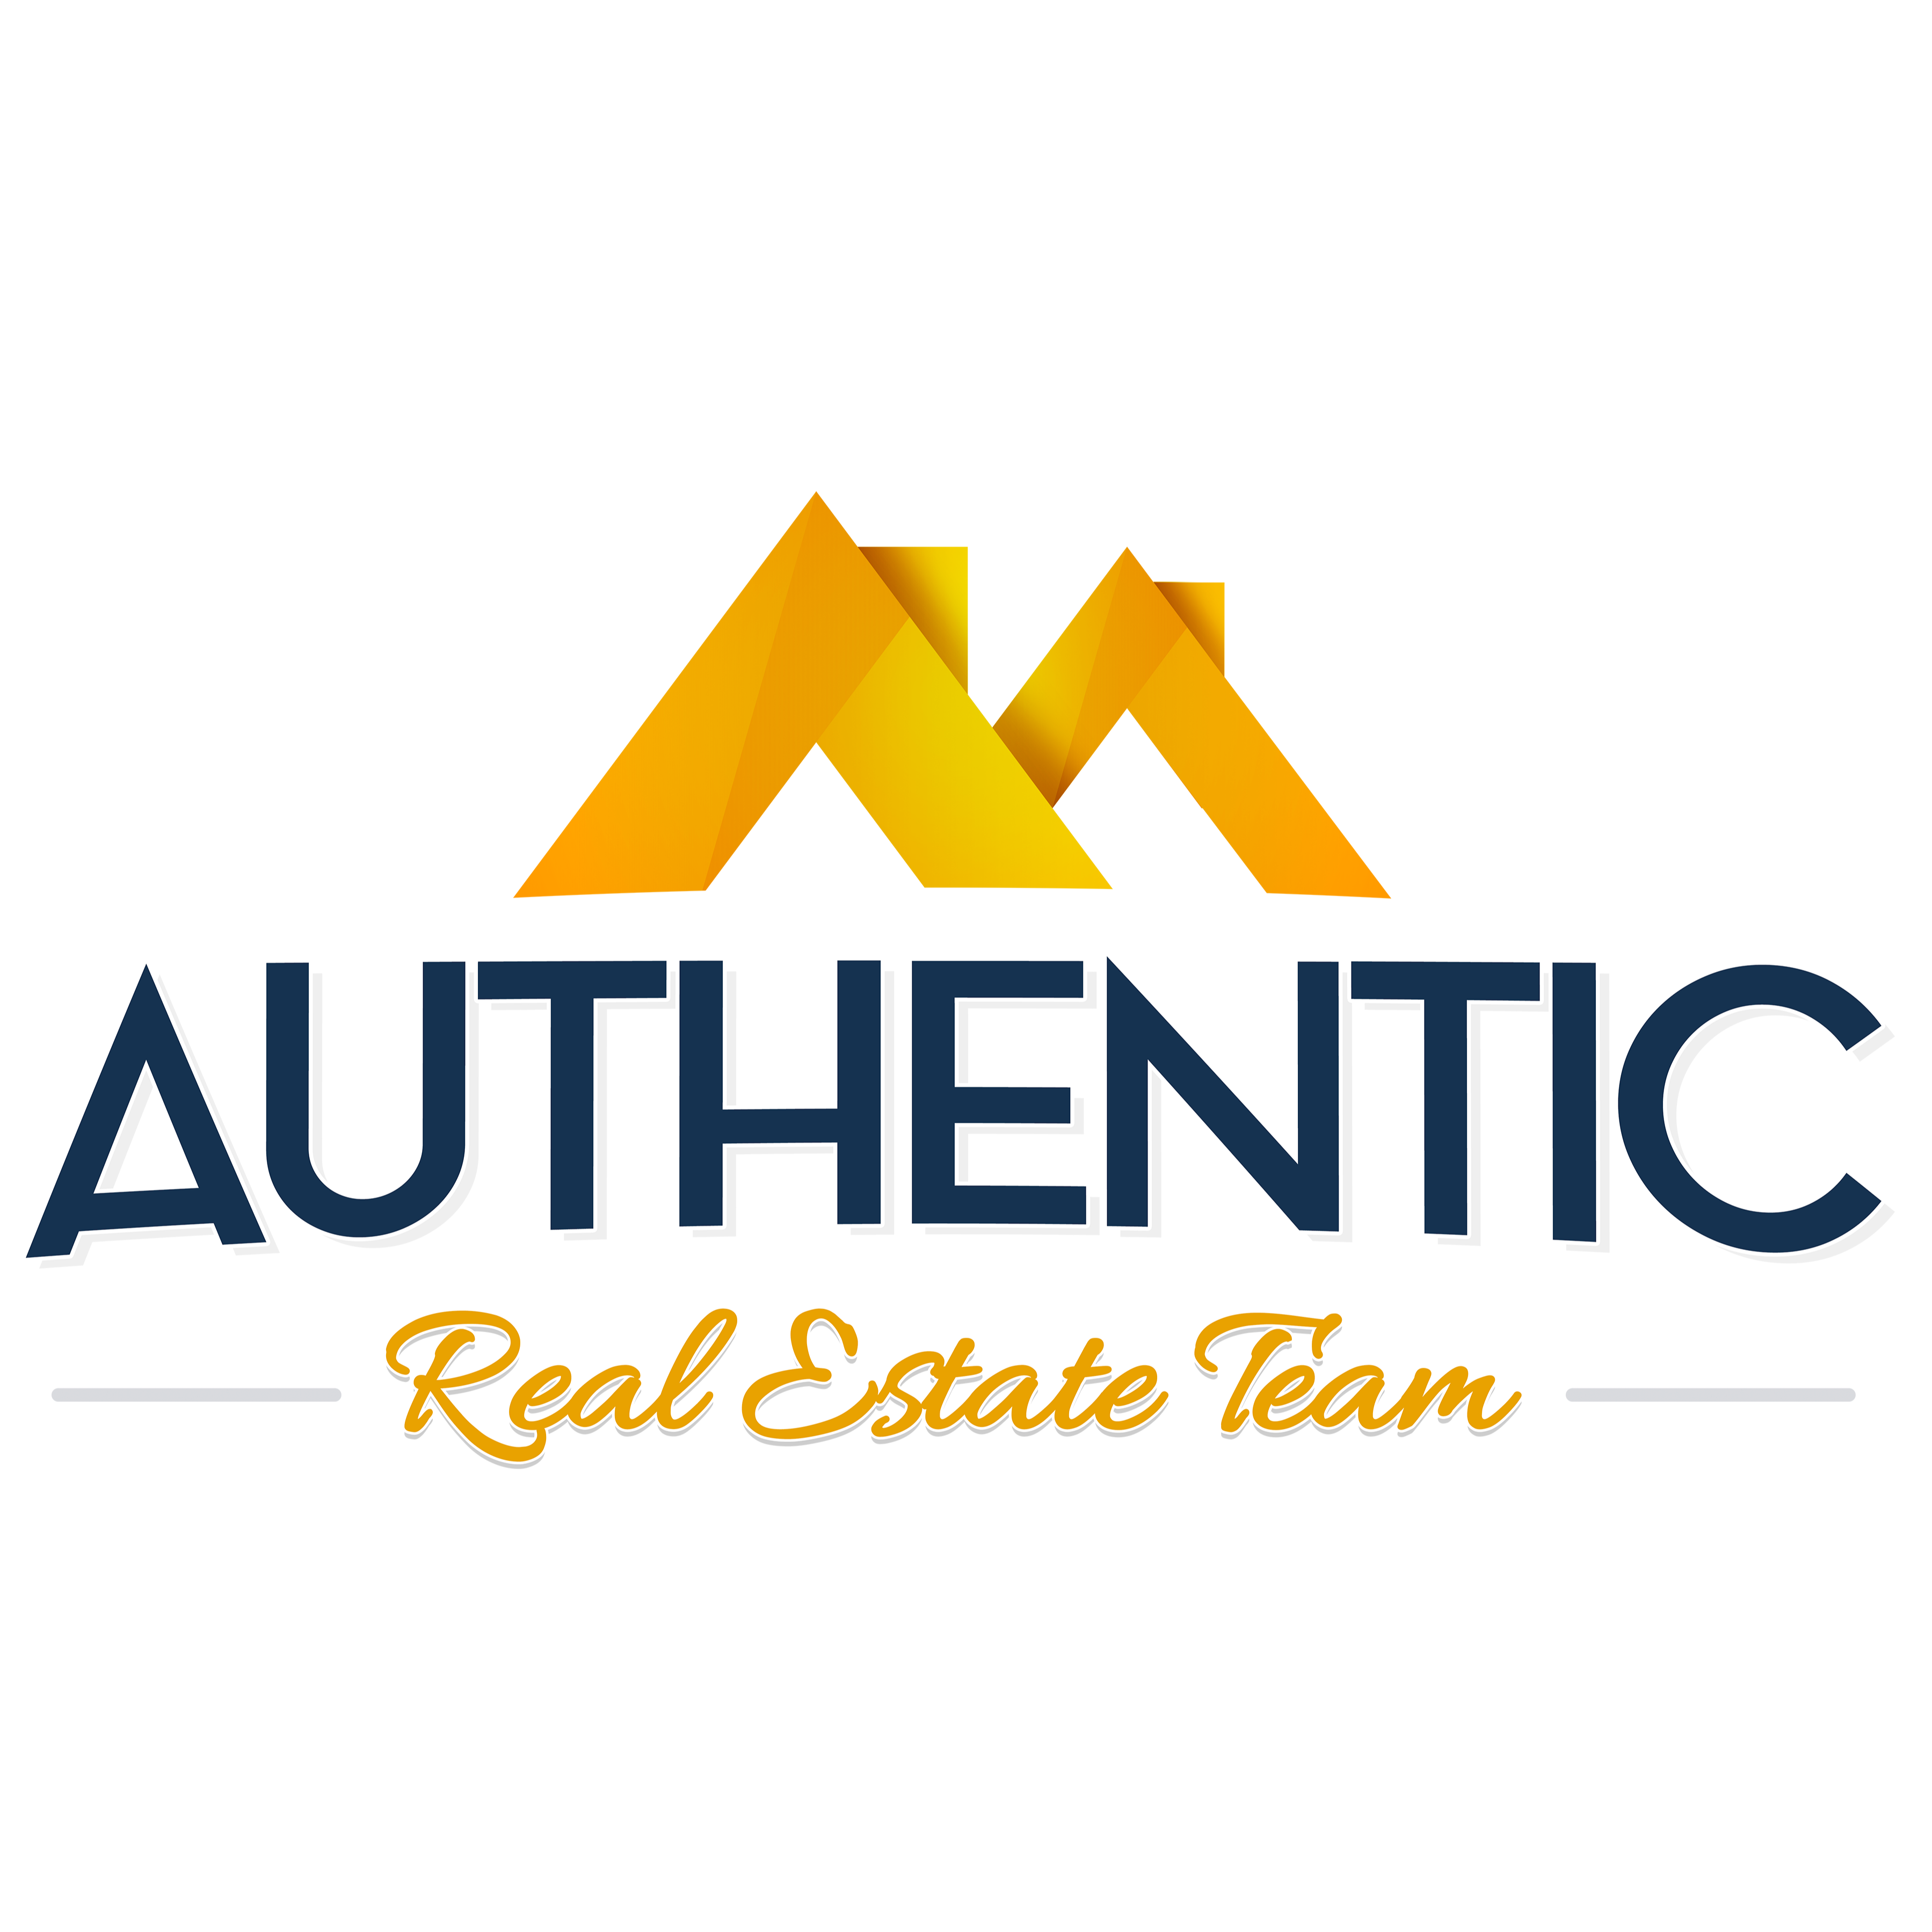 Authentic Real Estate Team